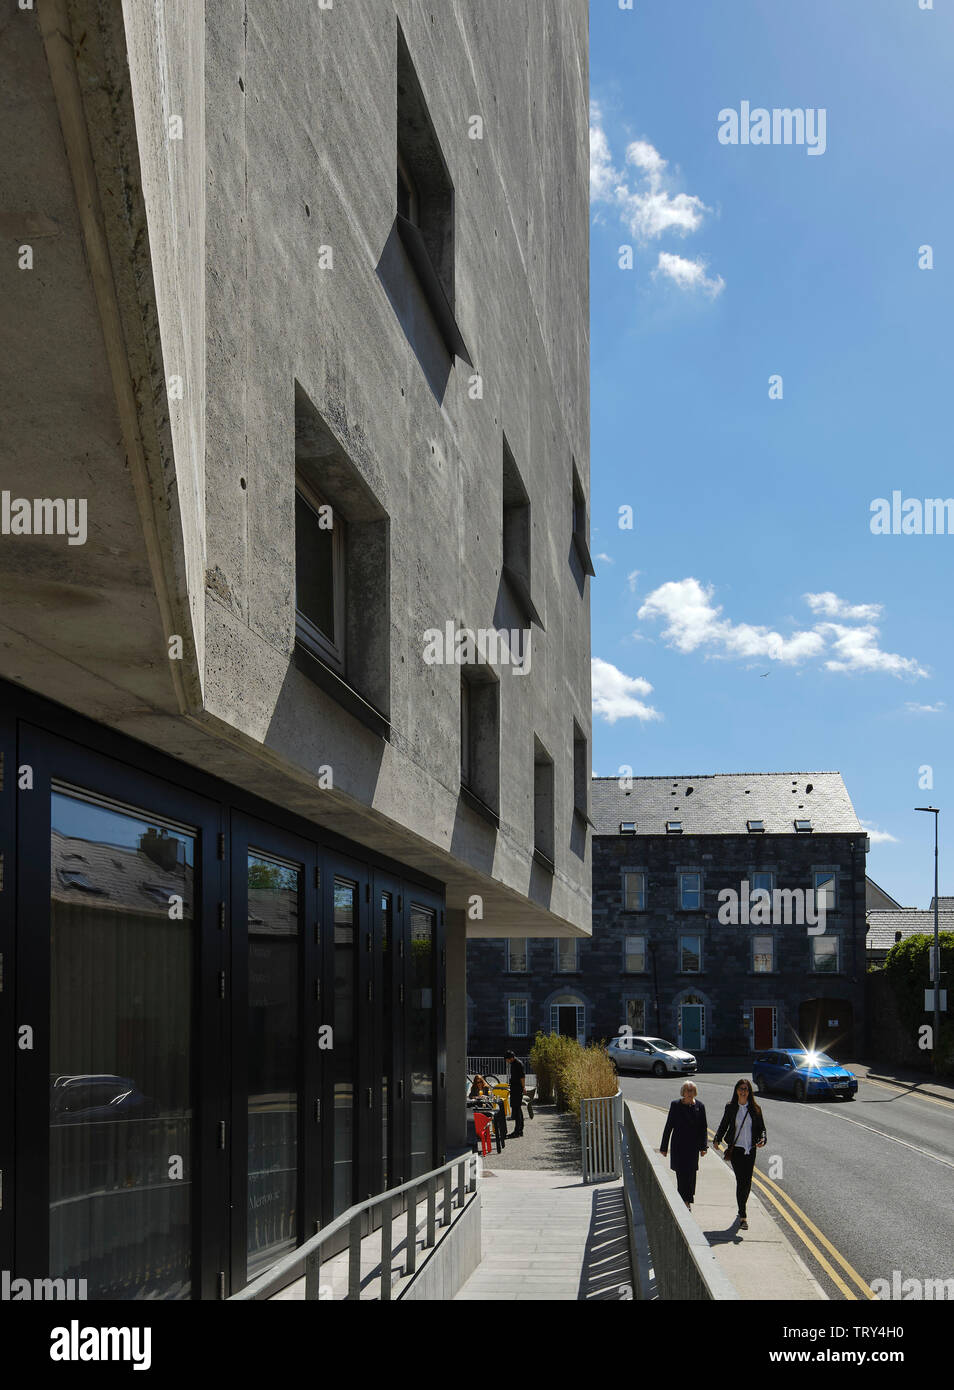 Le long de la perspective façade rue en béton avec rampe d'entrée et café à l'extérieur. Pálás Cinéma, Galway, Irlande. Architecte : dePaor, 2017. Banque D'Images